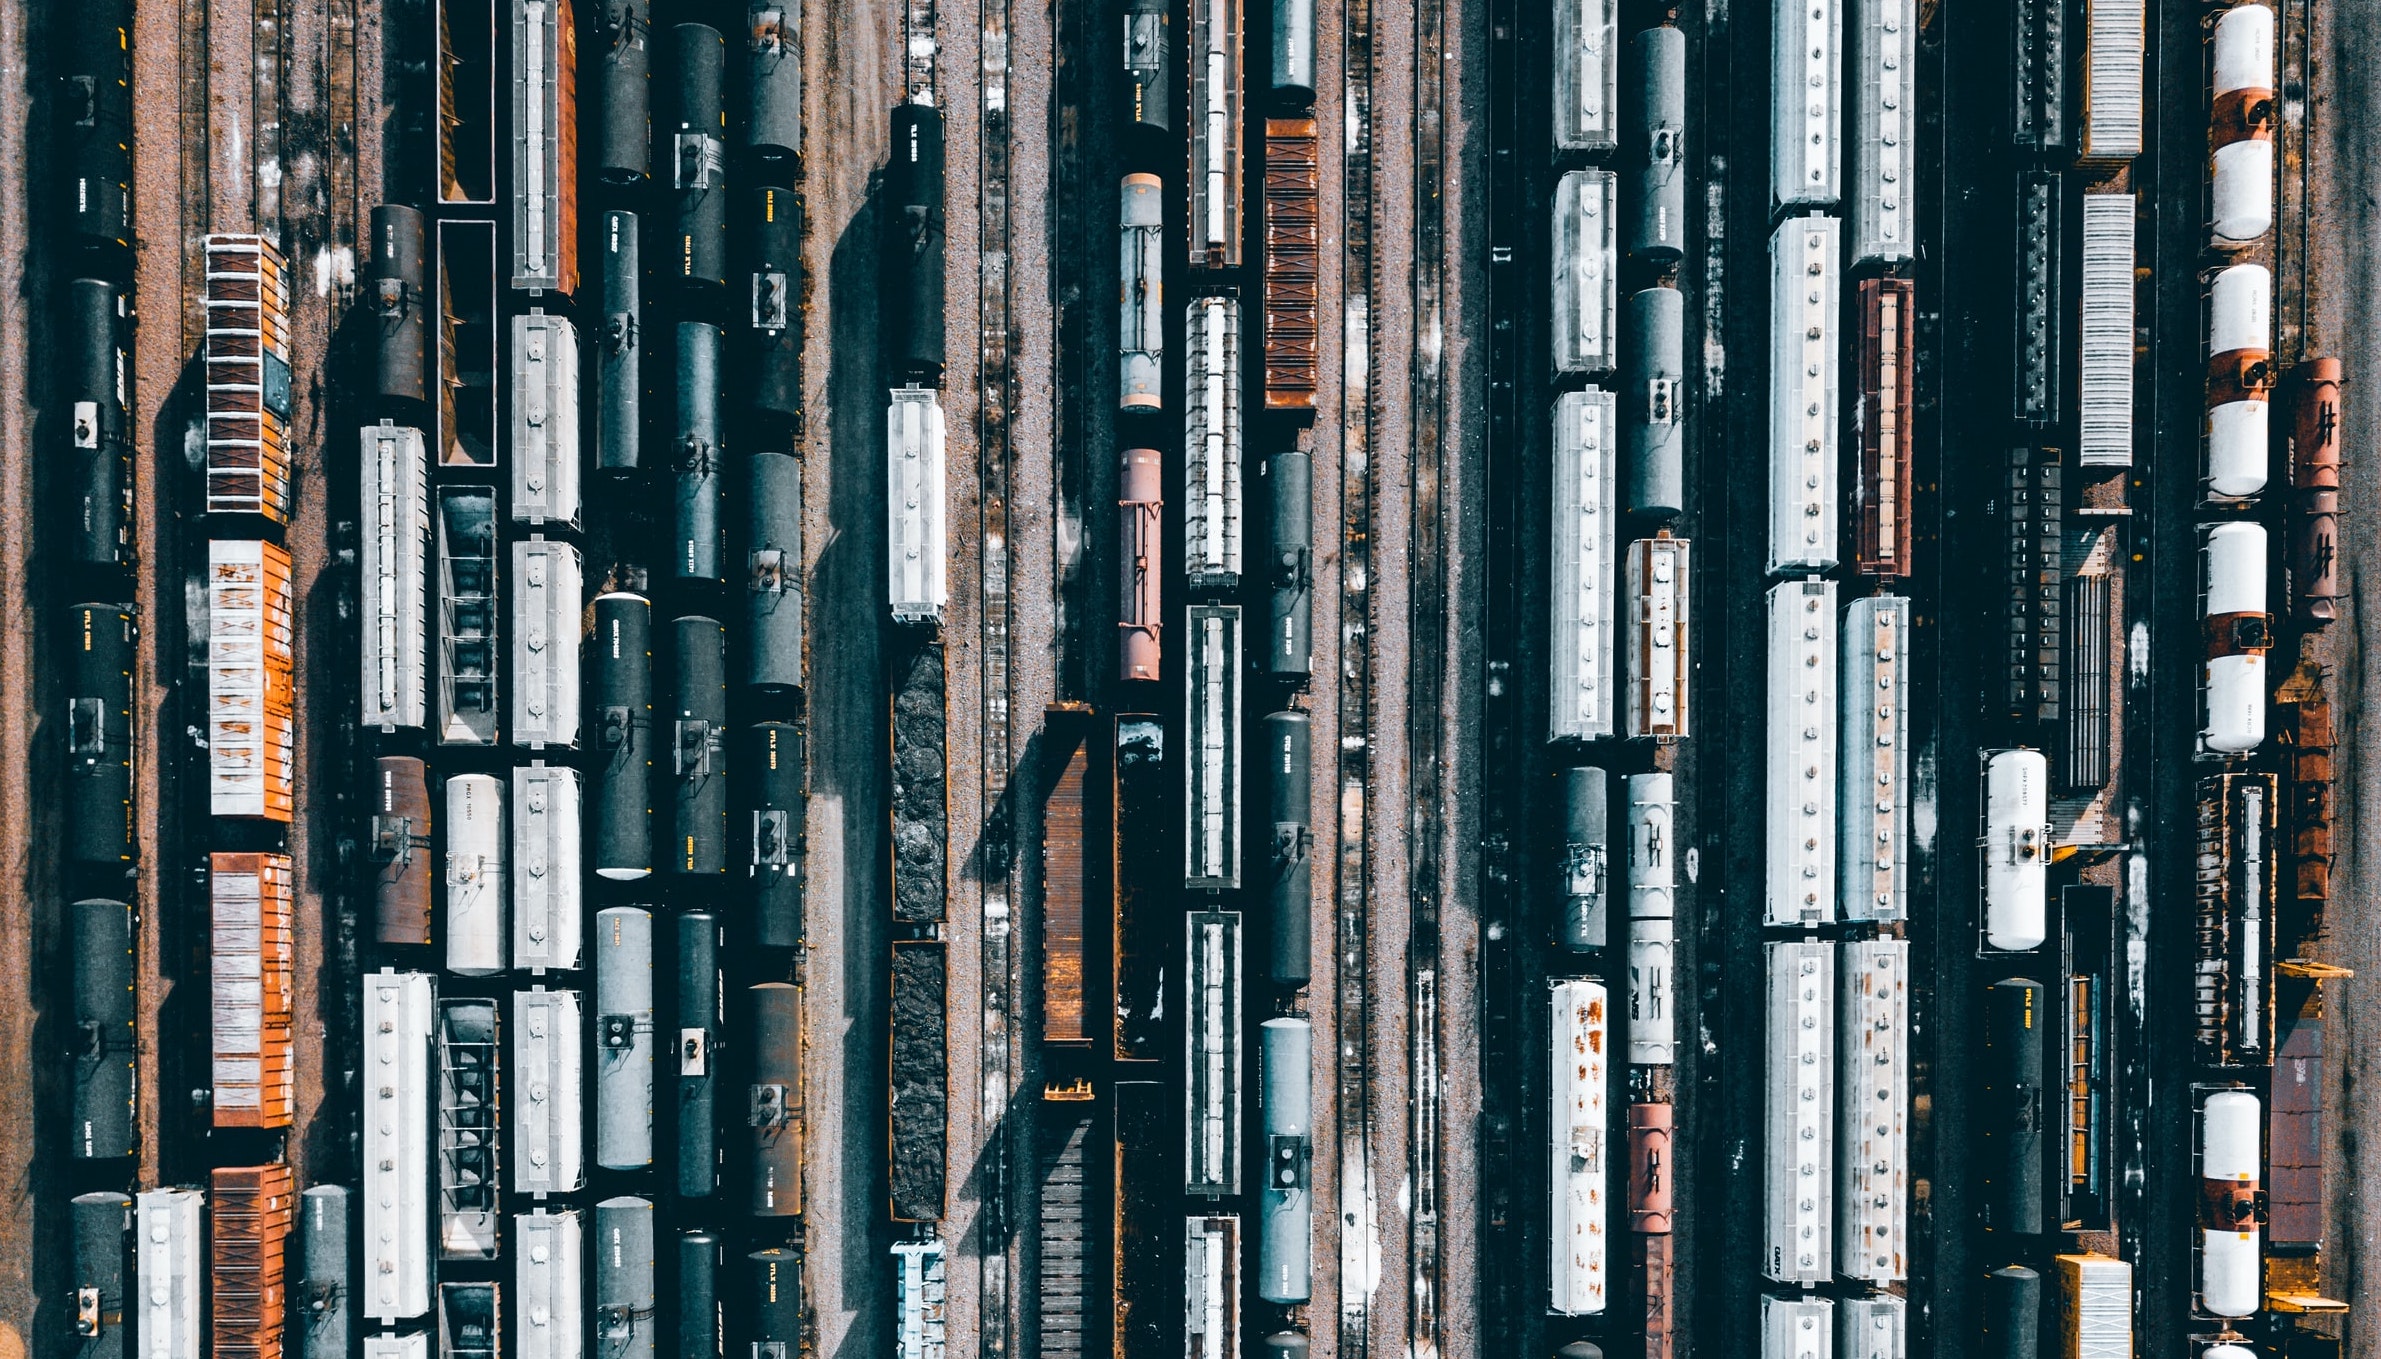 train cars in a train yard